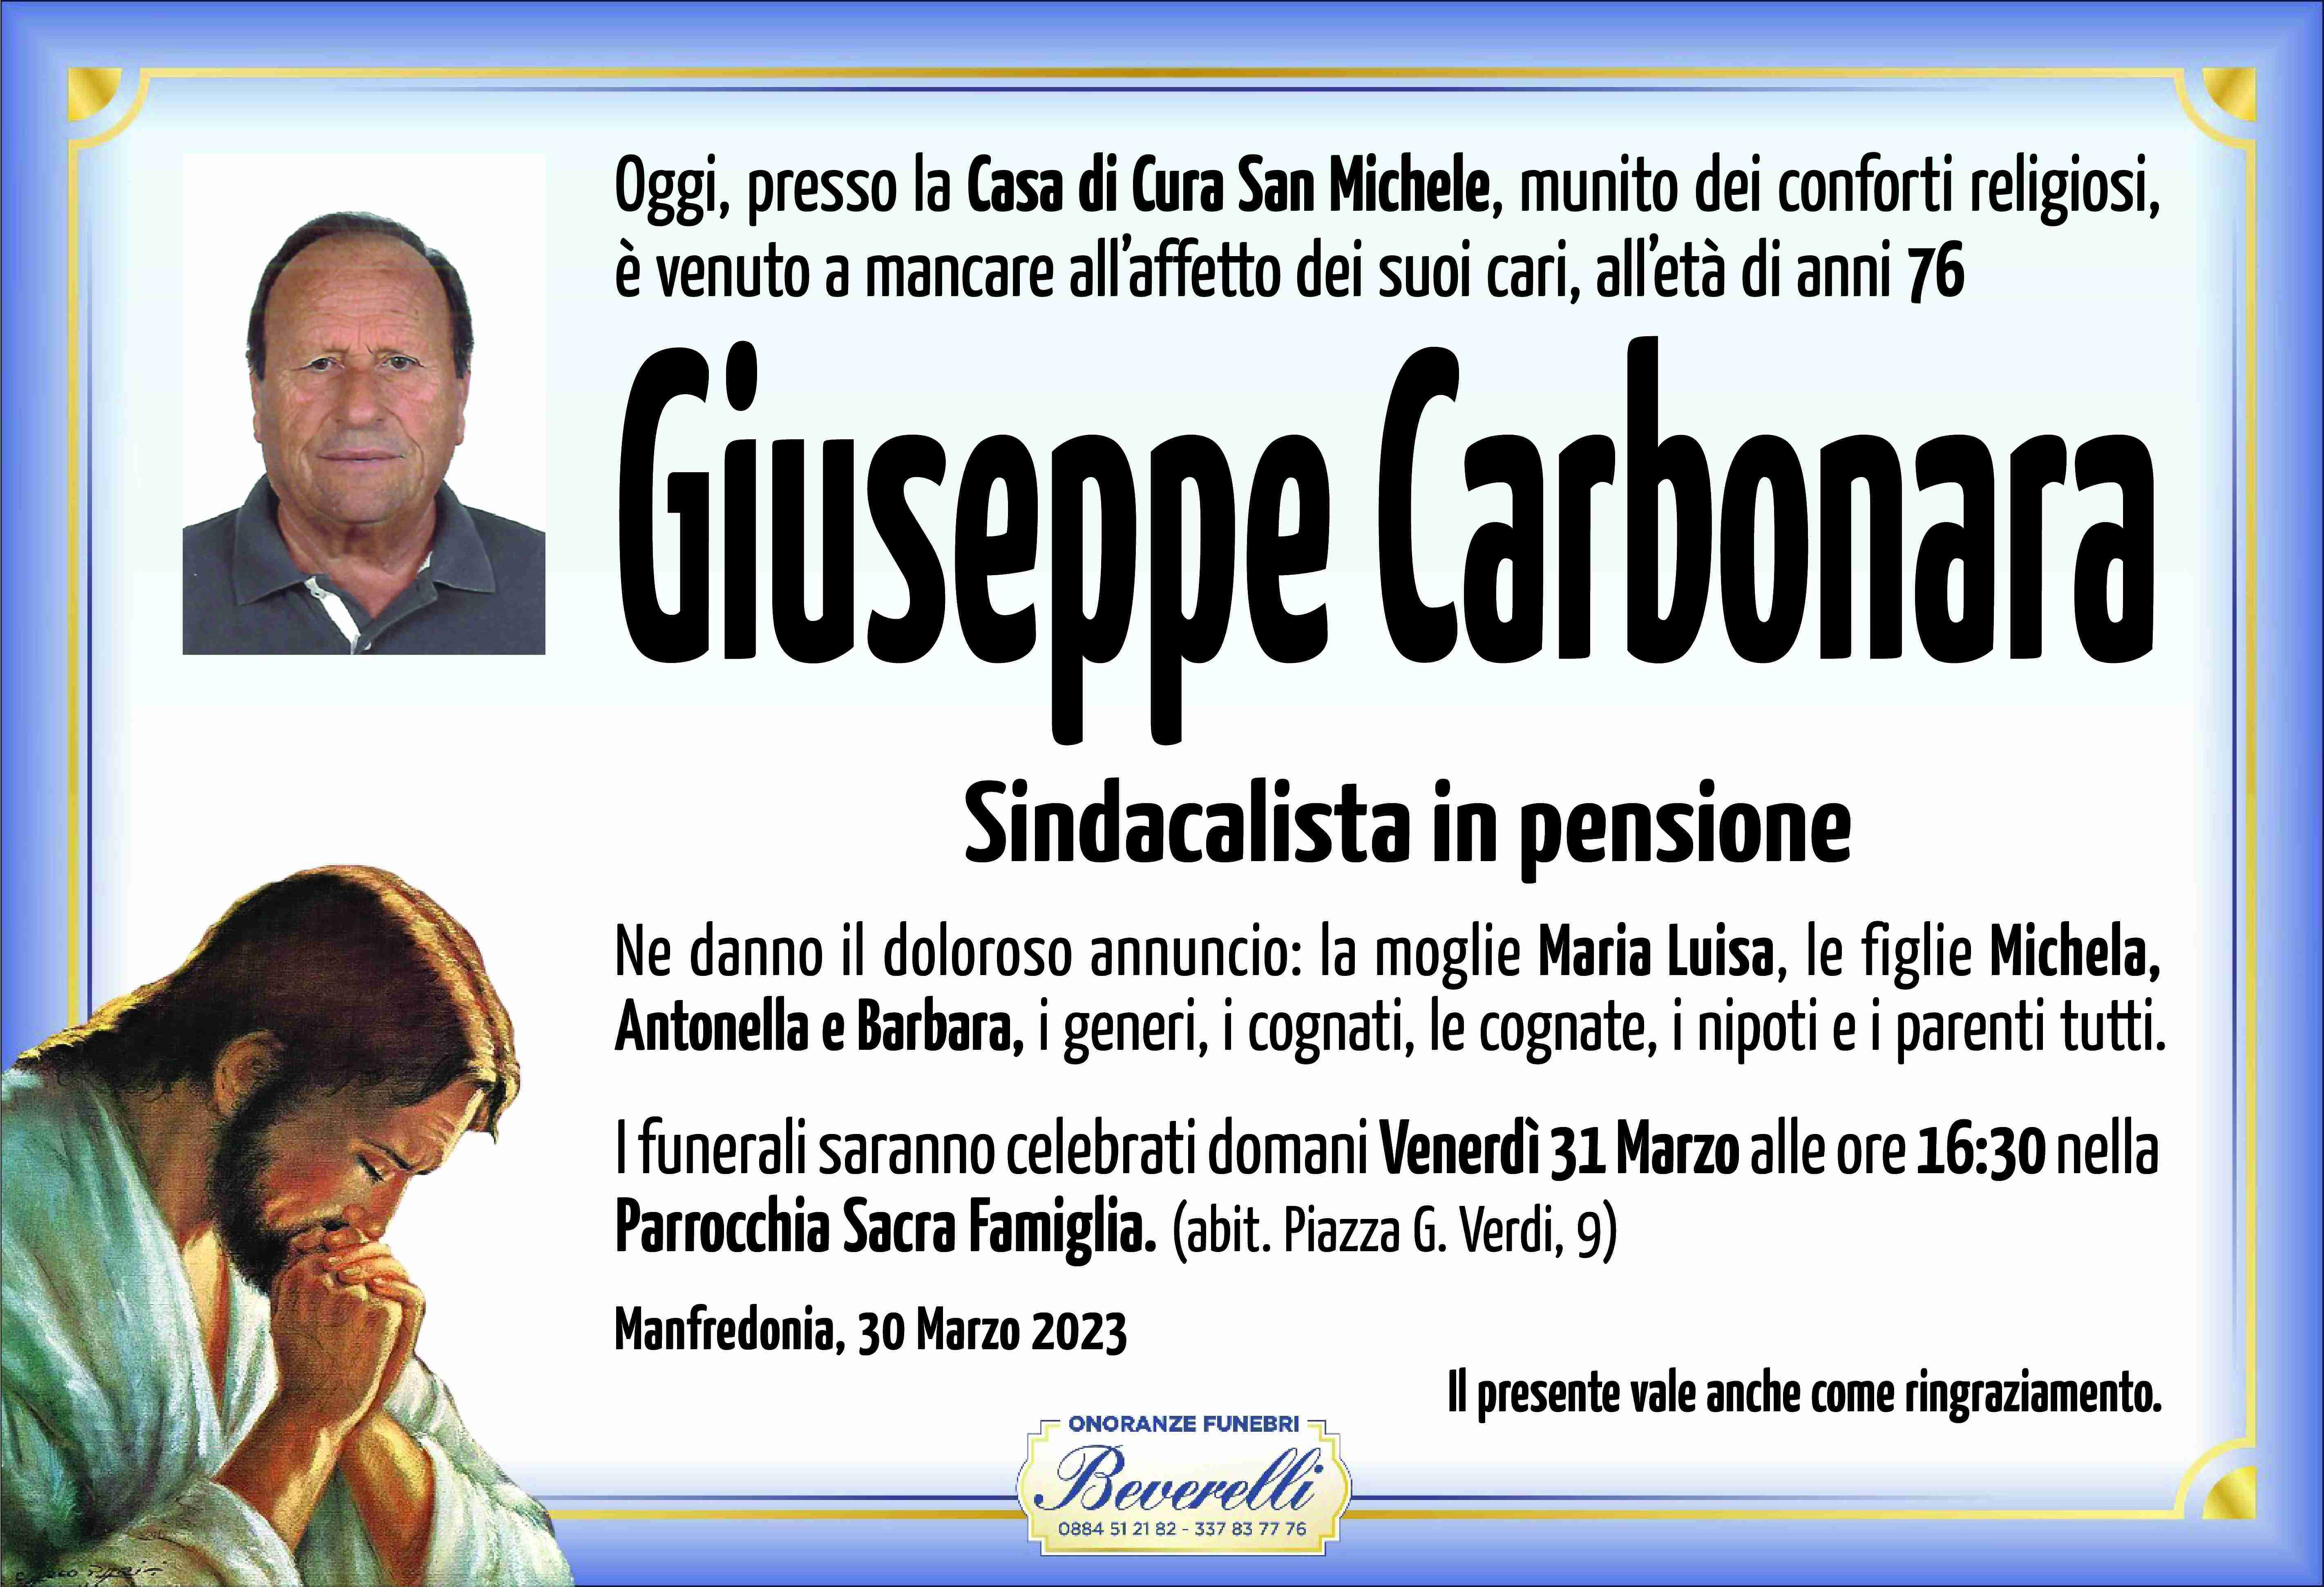 Giuseppe Carbonara